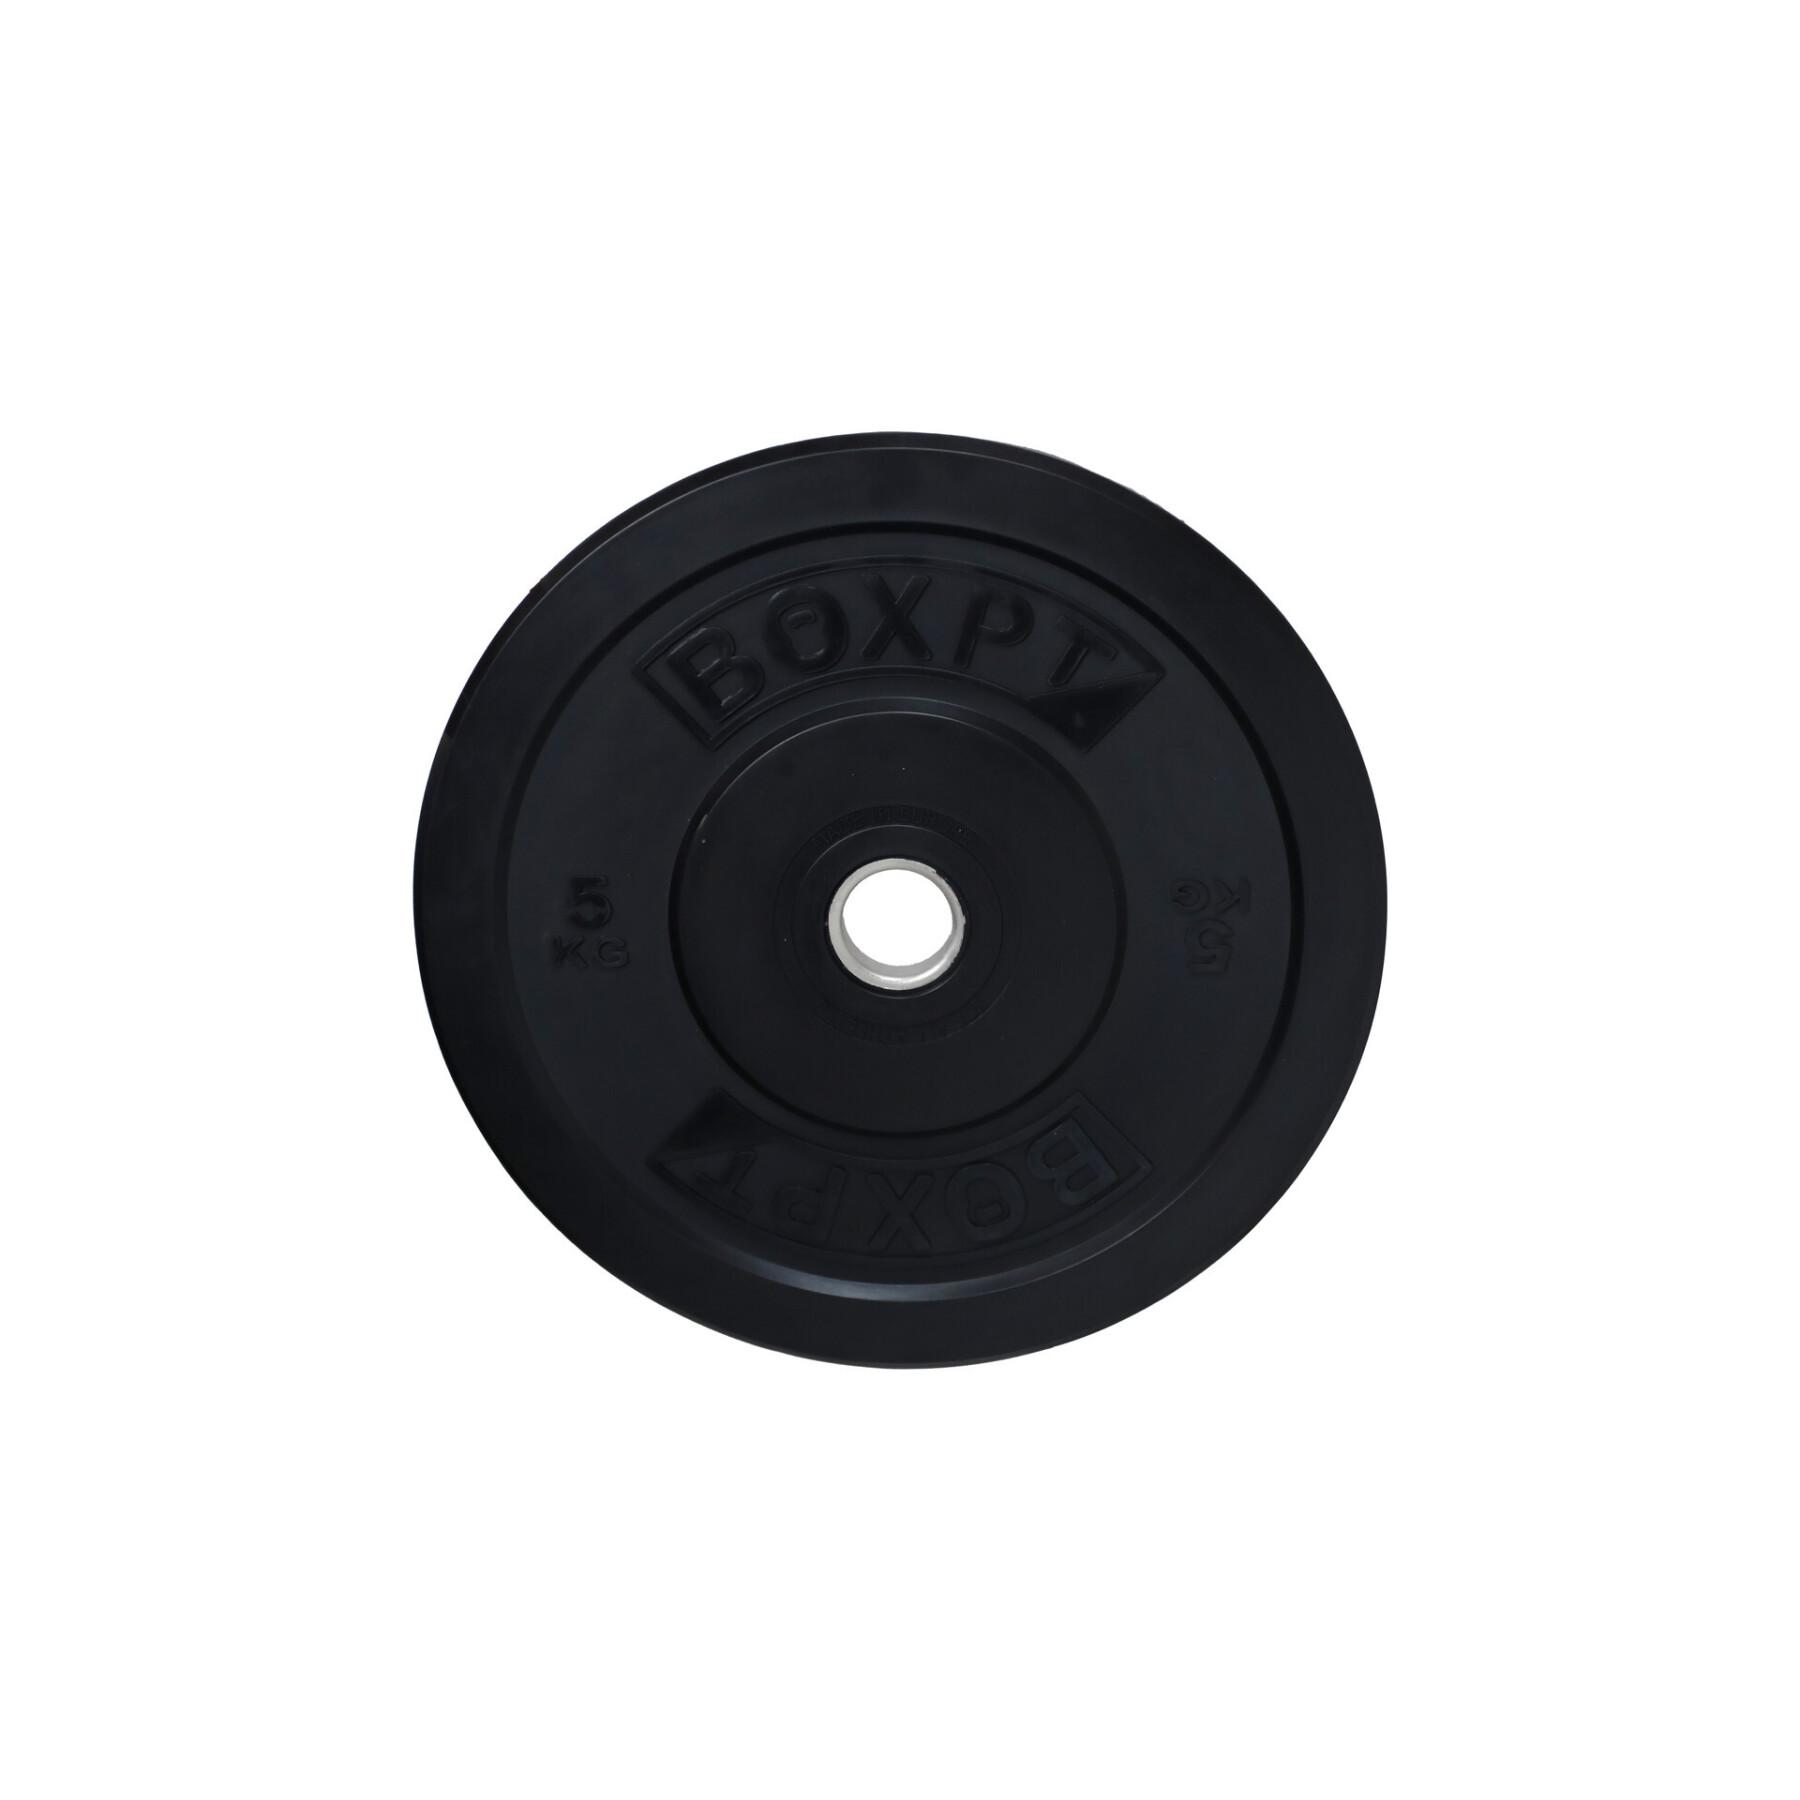 Disco per il bodybuilding Boxpt 2.0 - 5 kg